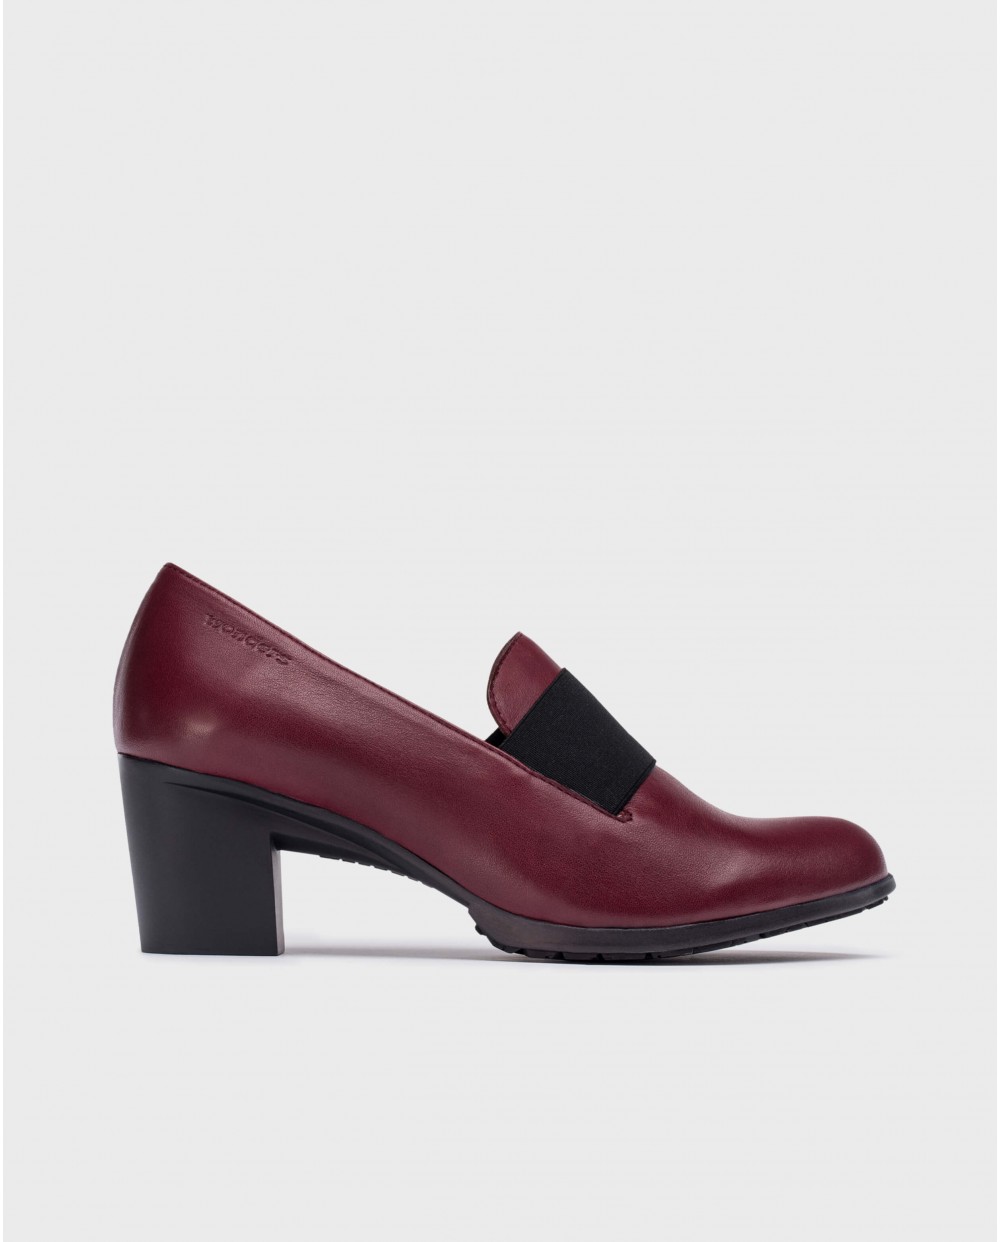 Wonders-Heels-Burgundy elastic shoes